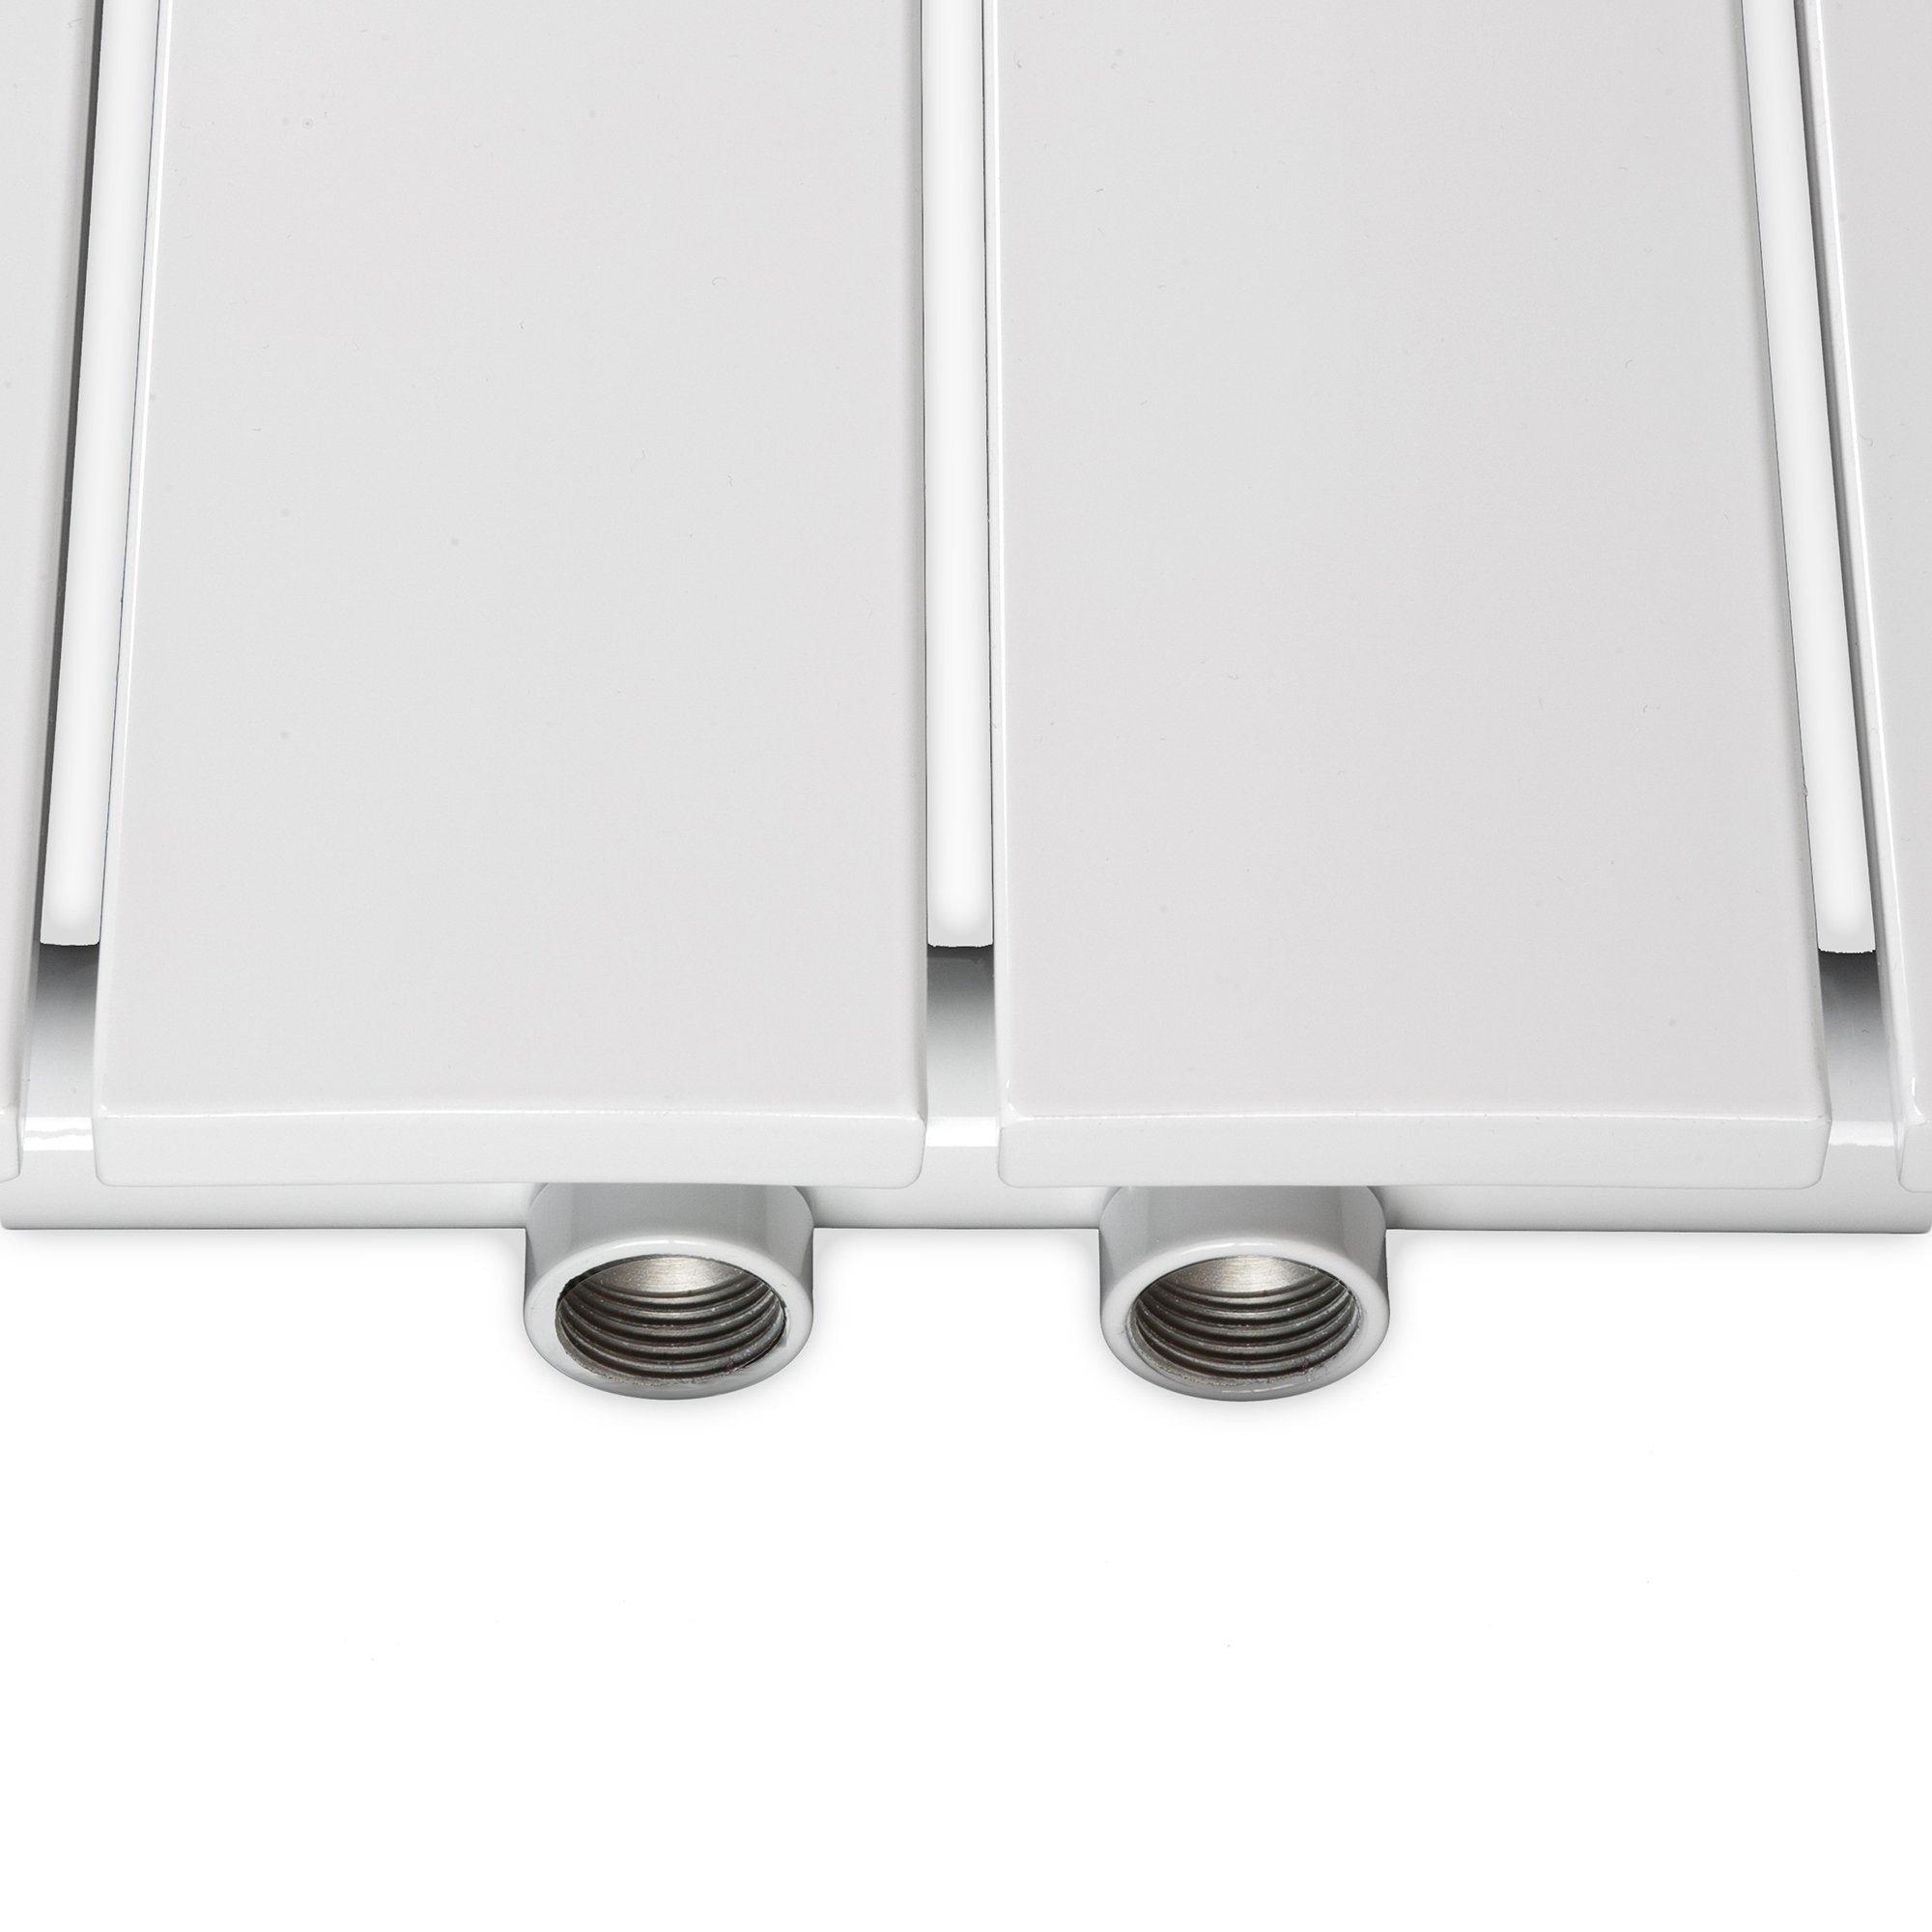 Design Paneelheizkörper vertikal weiß Heizkörper Badheizkörper flach Badezimmer Heizung Mittenanschluss - heizkoerper.shop